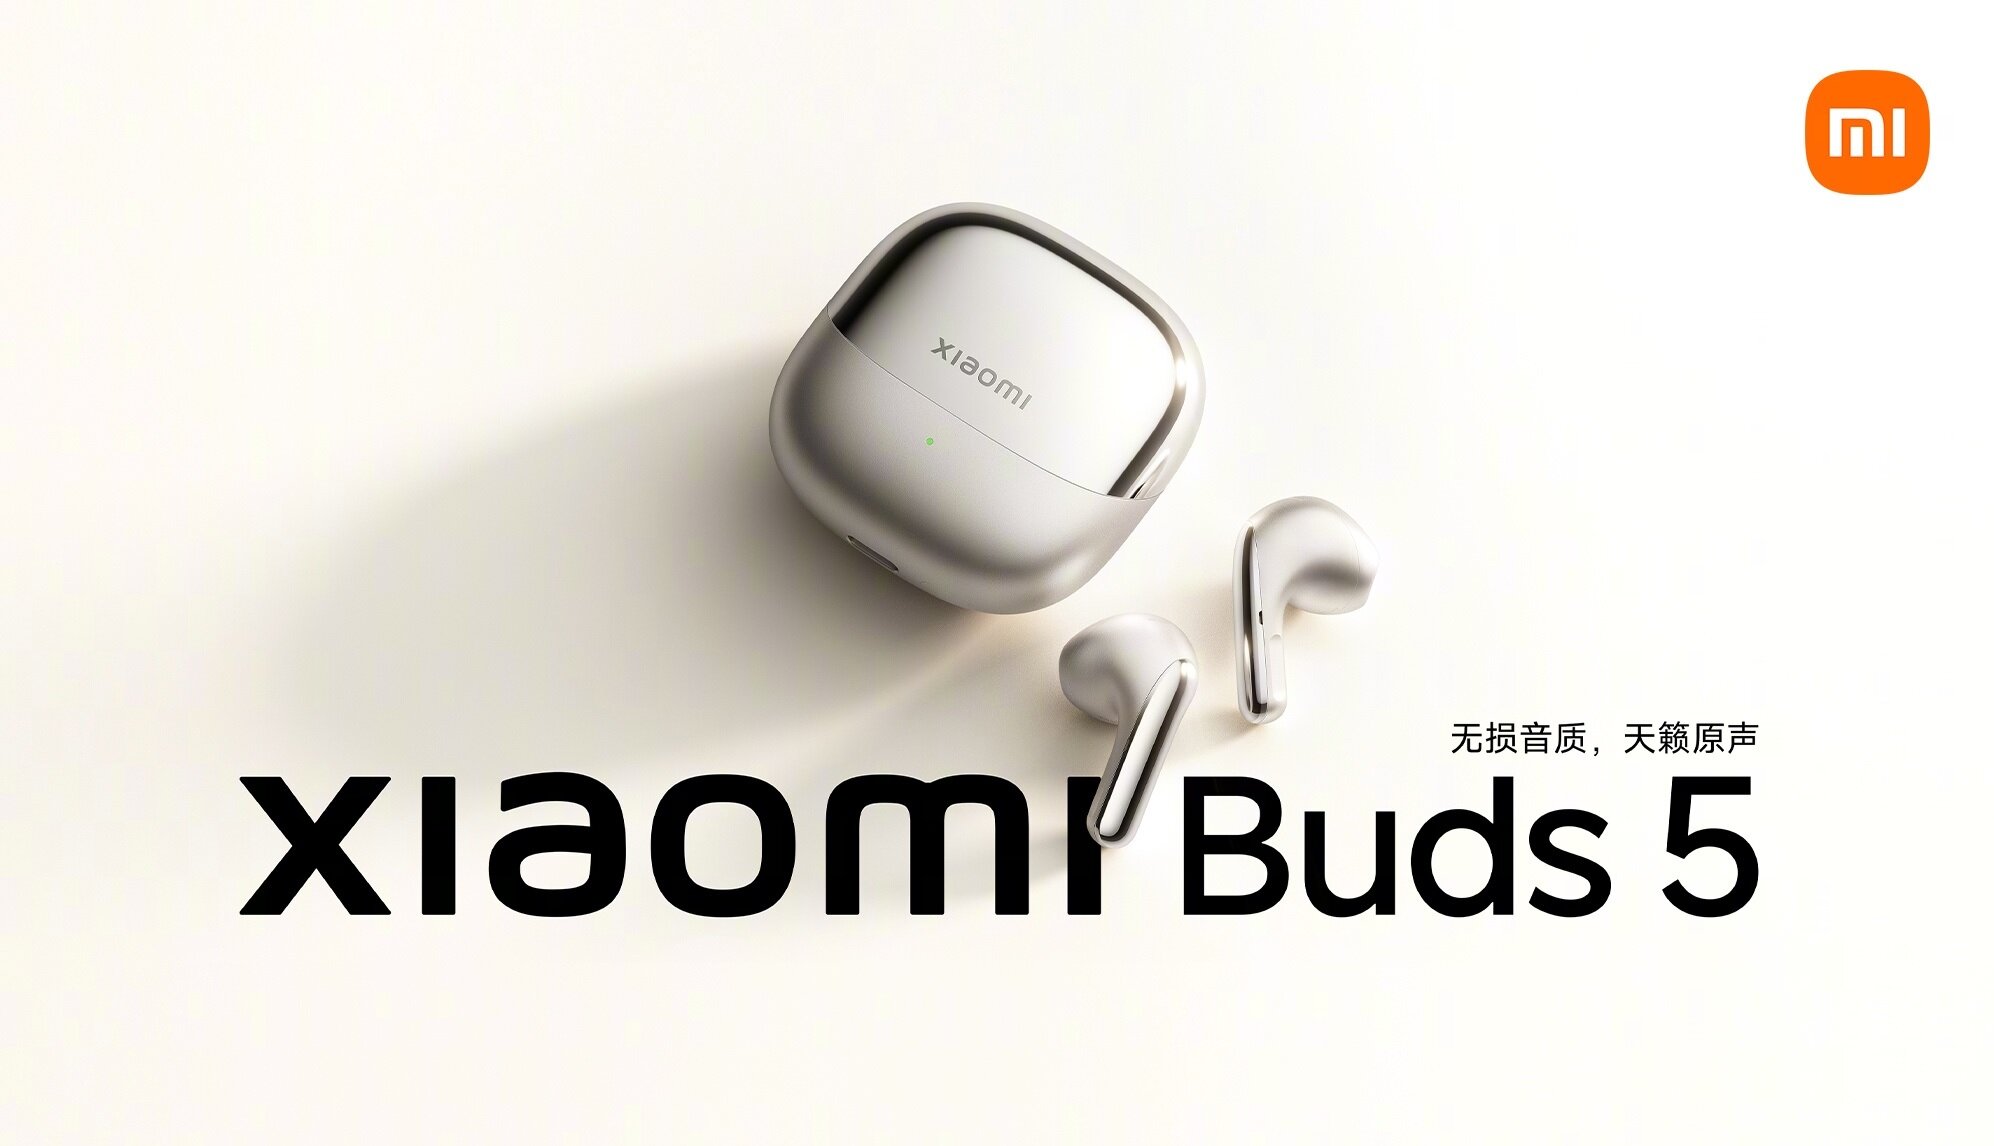 Не «вкладыши», а «полувкладыши»: Xiaomi представила беспроводные наушники Buds 5